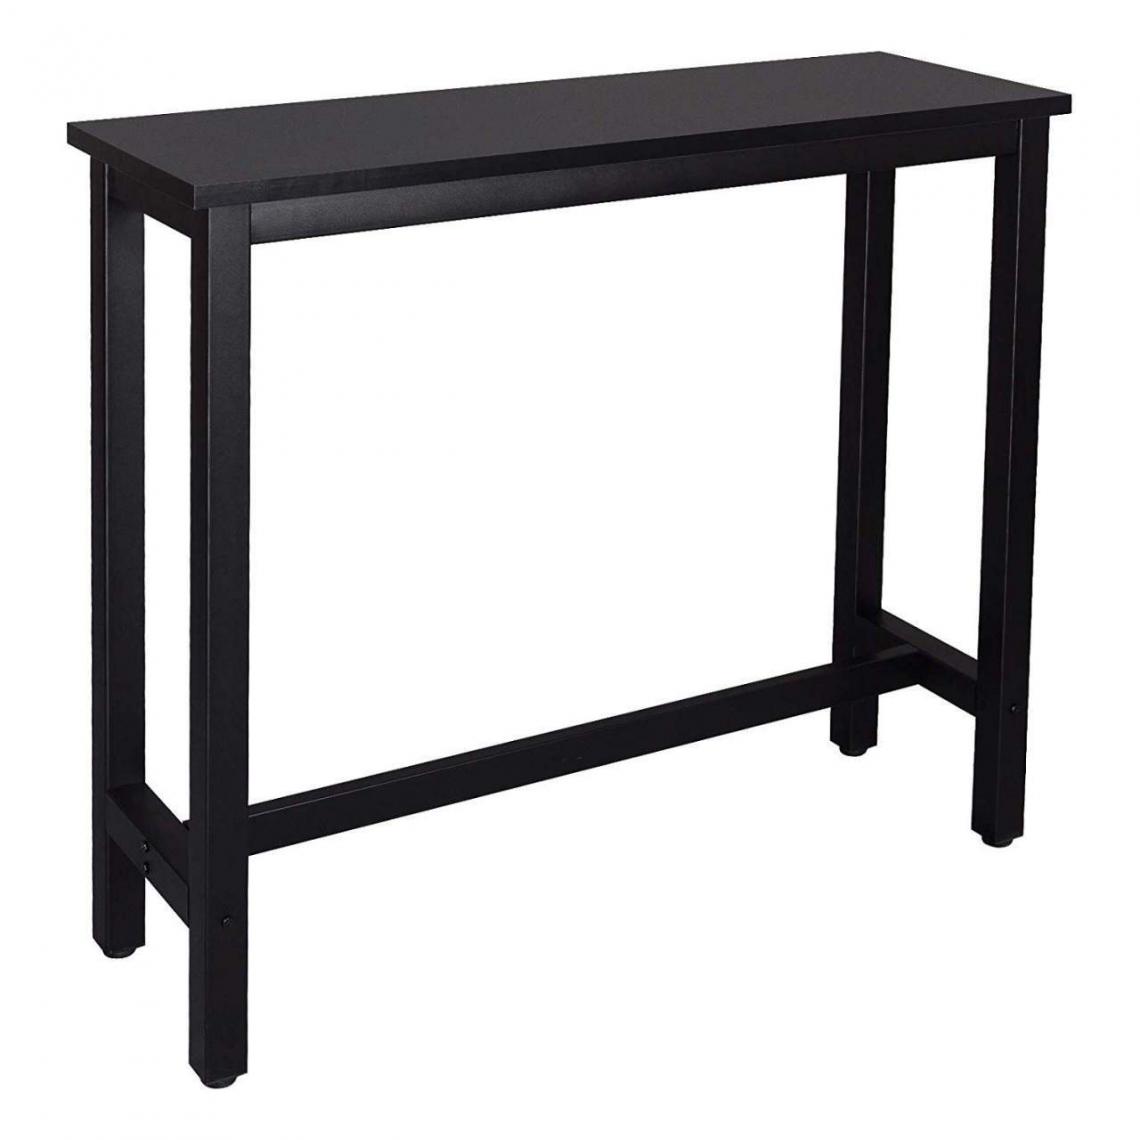 Helloshop26 - Table de bar moderne avec structure en métal et MDF dans un design élégant noir 19_0000014 - Tables à manger